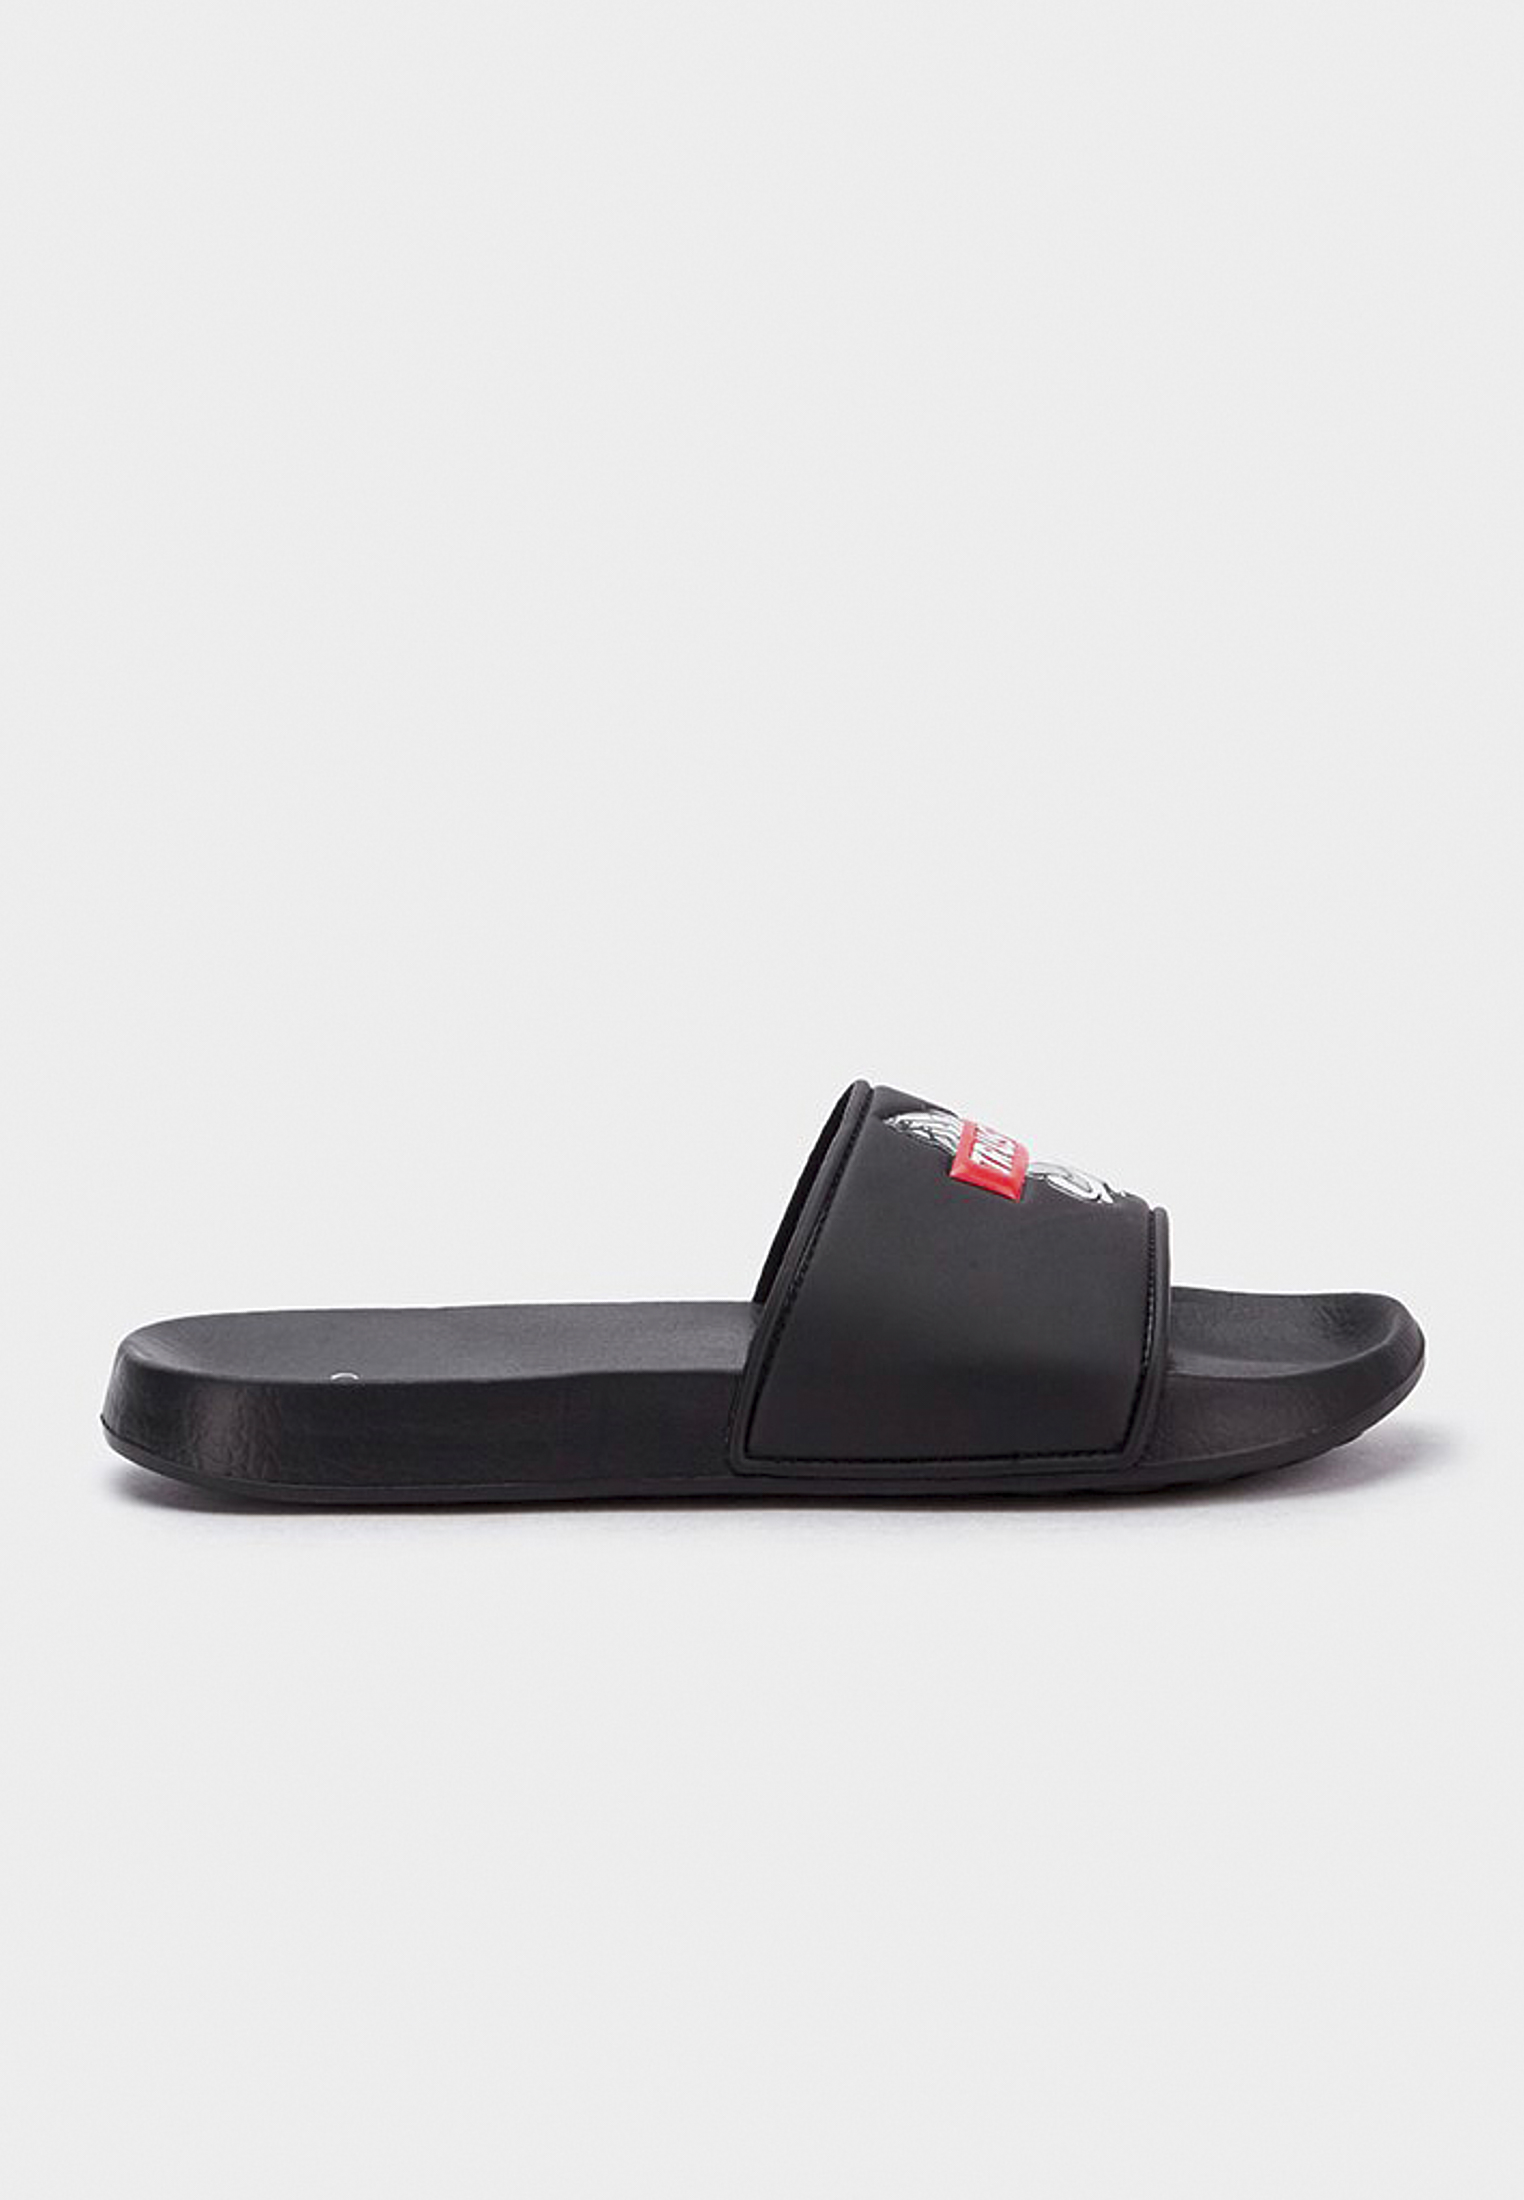 Accessoires C&S WL Trust Sandals in Farbe black/mc